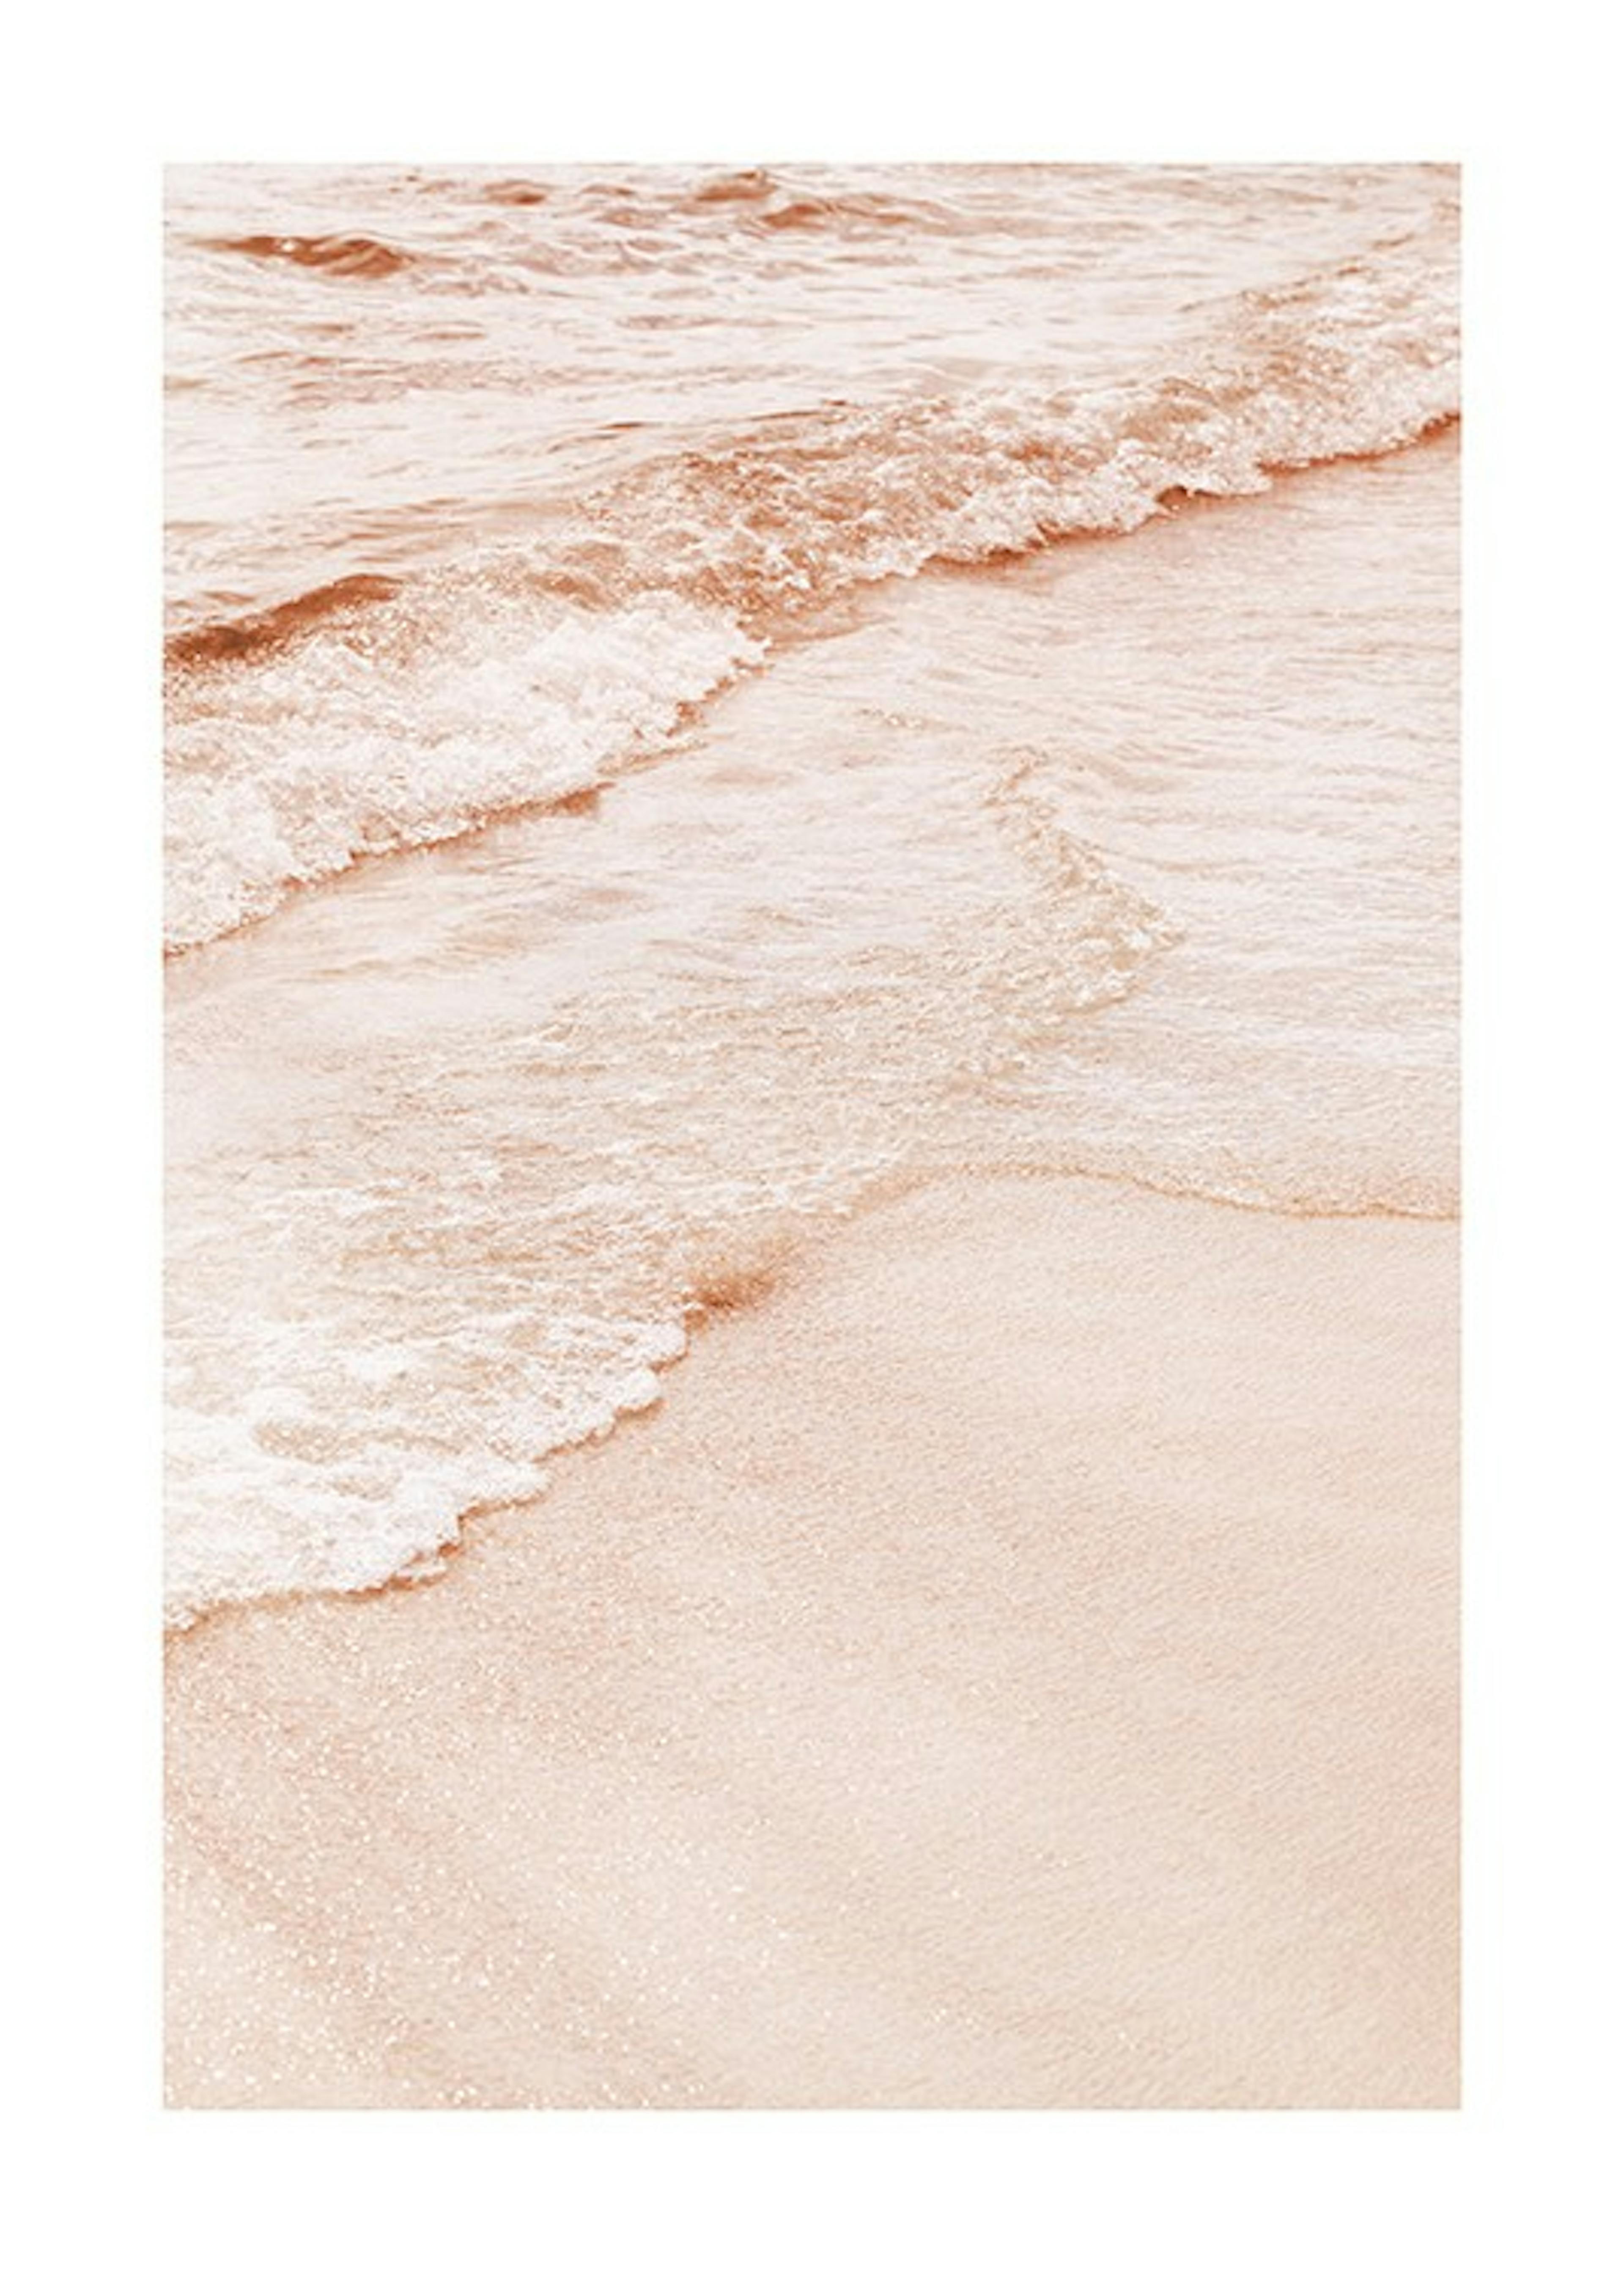 Peach Colored Beach Print 0